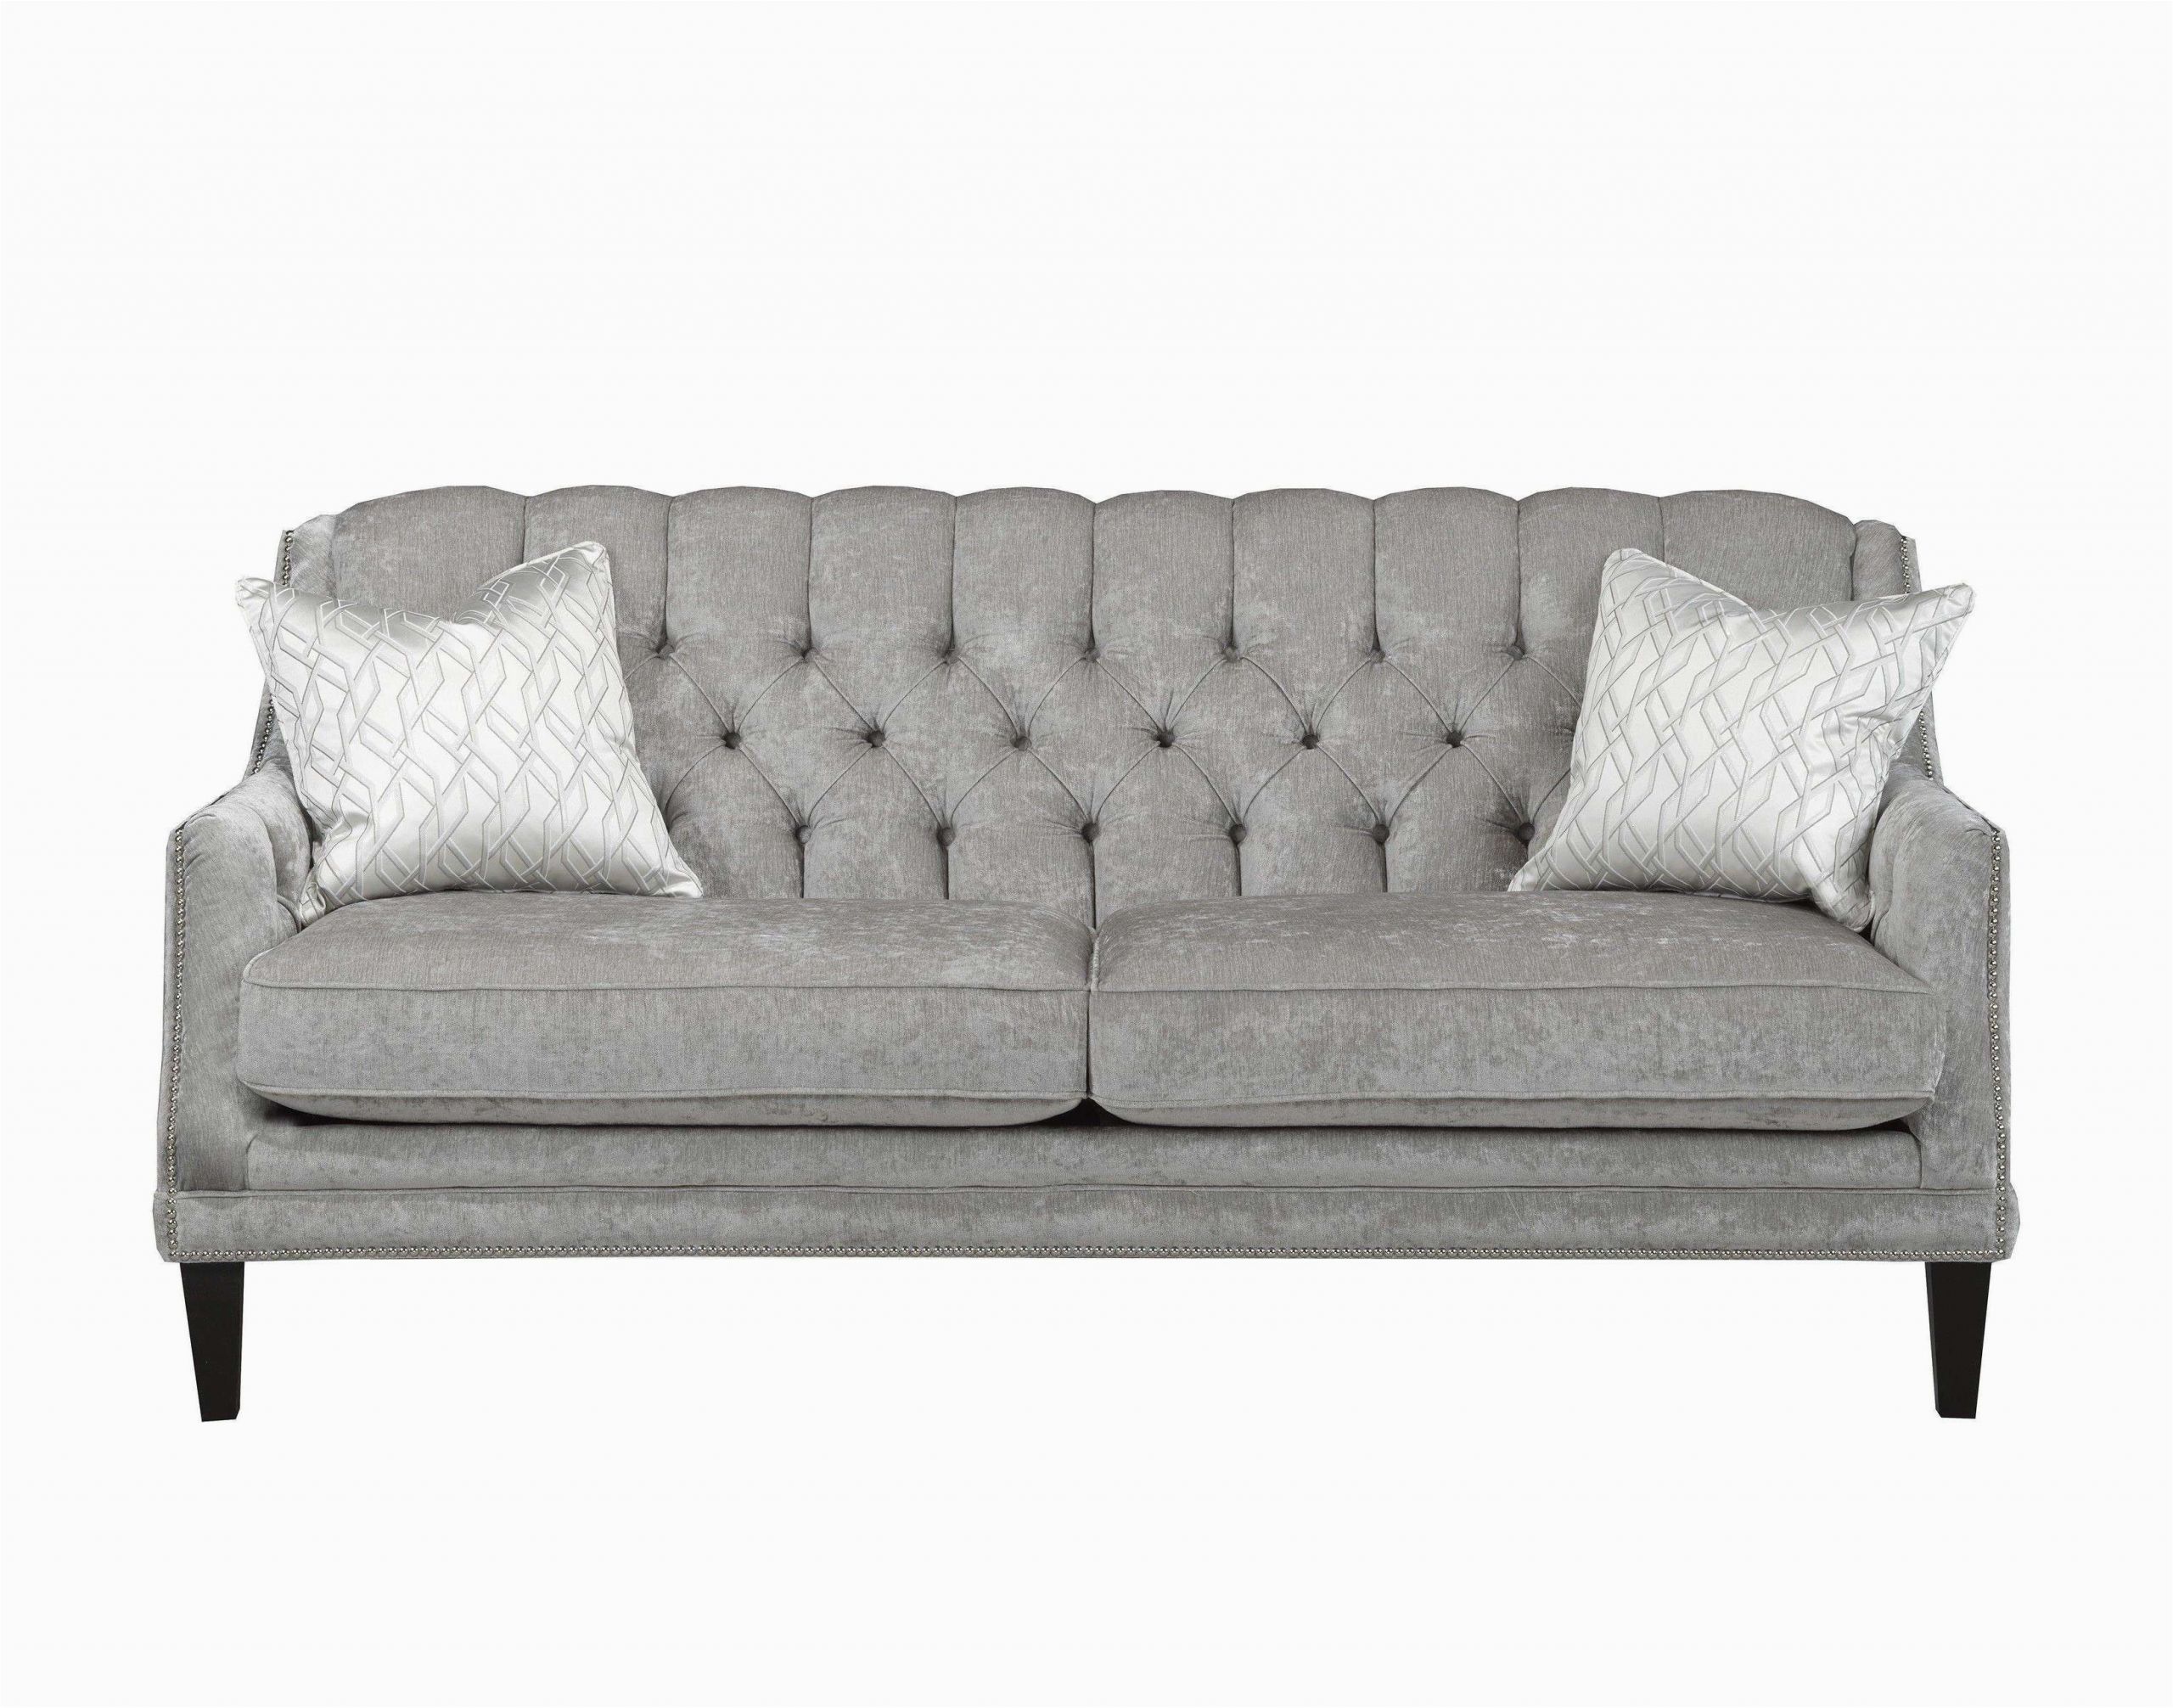 poco sofa mit schlaffunktion sofa schlafsofa inspirierend 50 neueste design ideen poco neu